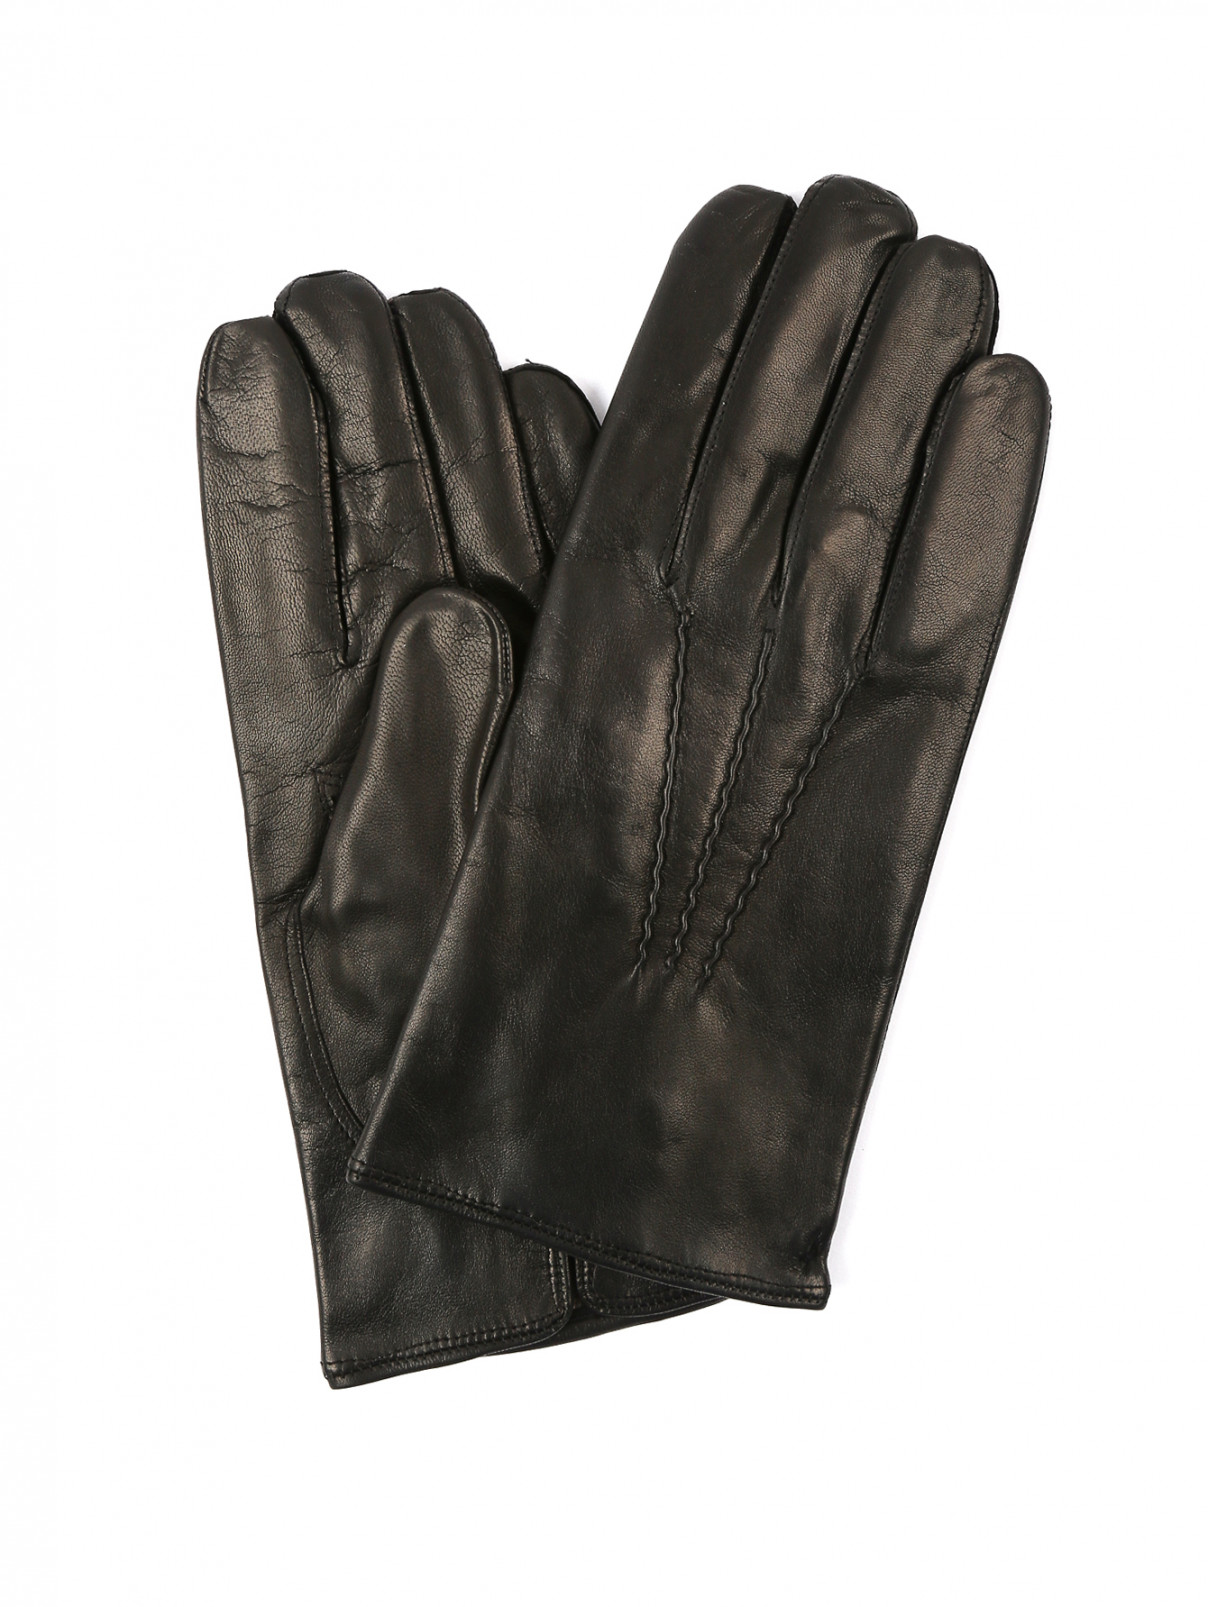 Перчатки из кожи с кашемировым подкладом Sermoneta gloves  –  Общий вид  – Цвет:  Черный